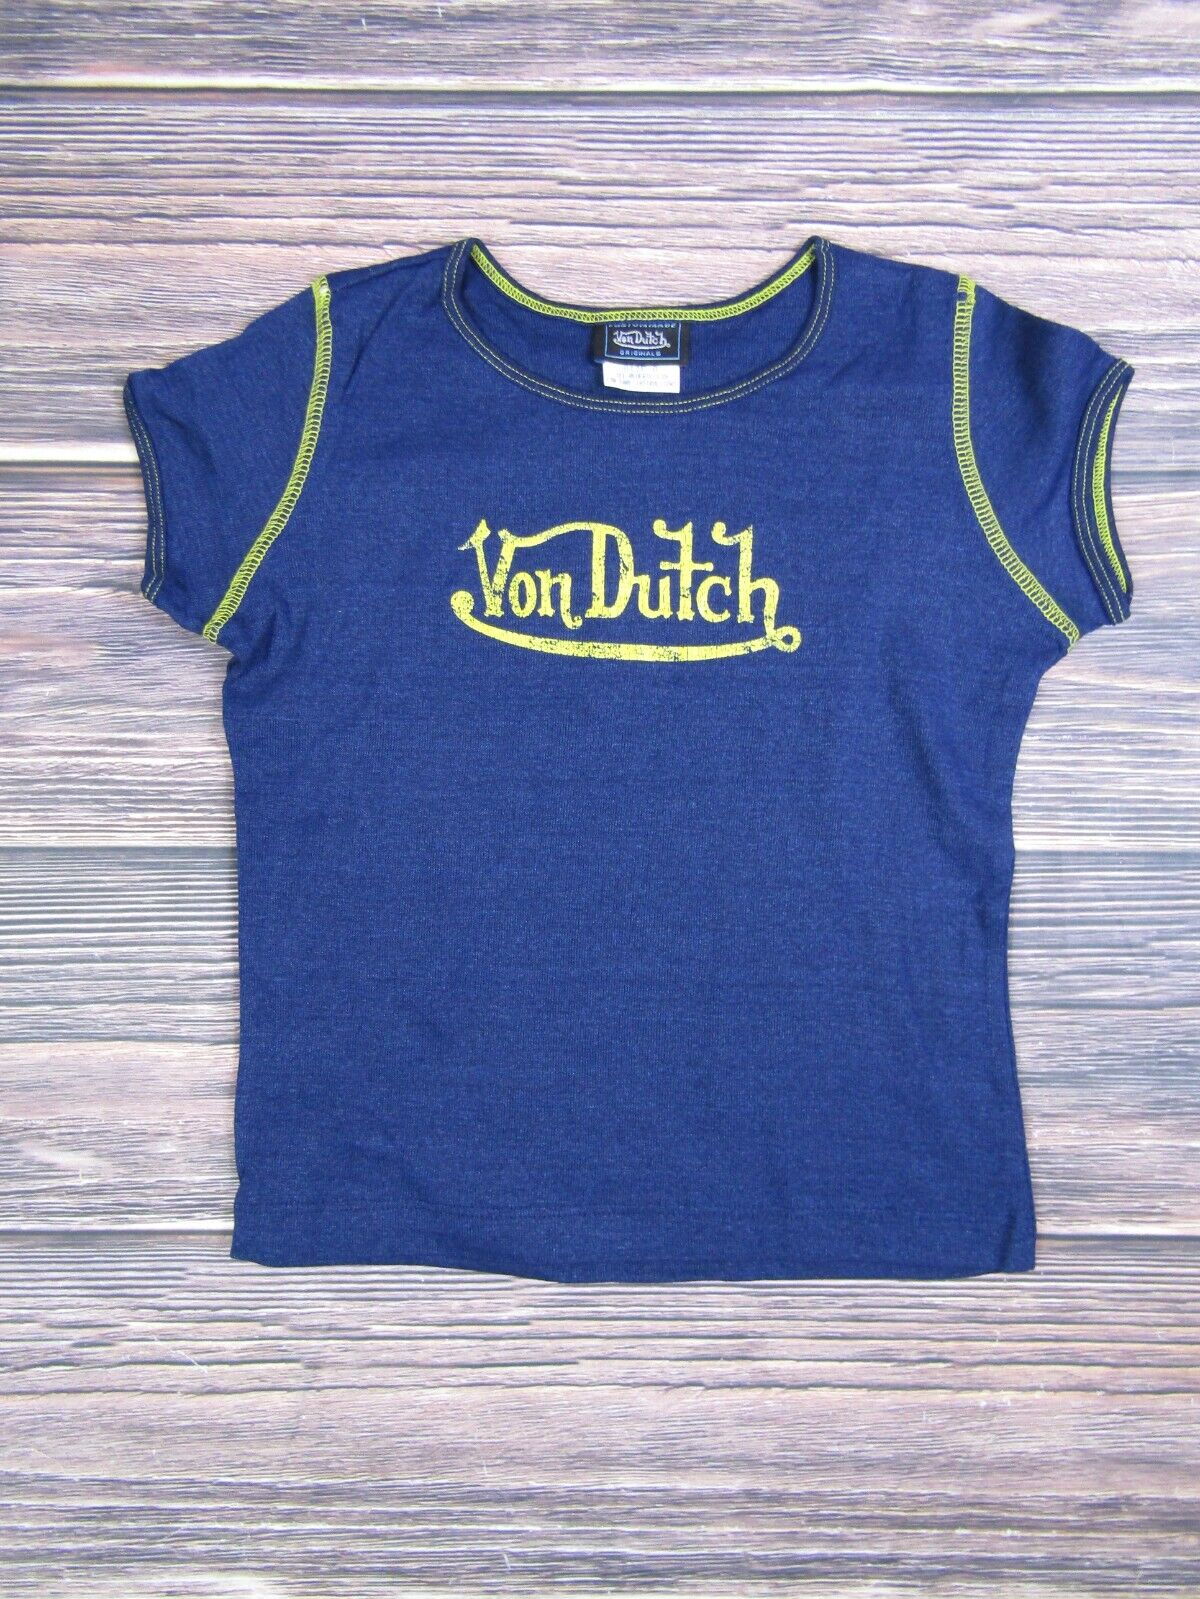 Von Dutch NEW Kids Teen Blue Short Sleeve Tee T Shirt 90s VTG Vintage